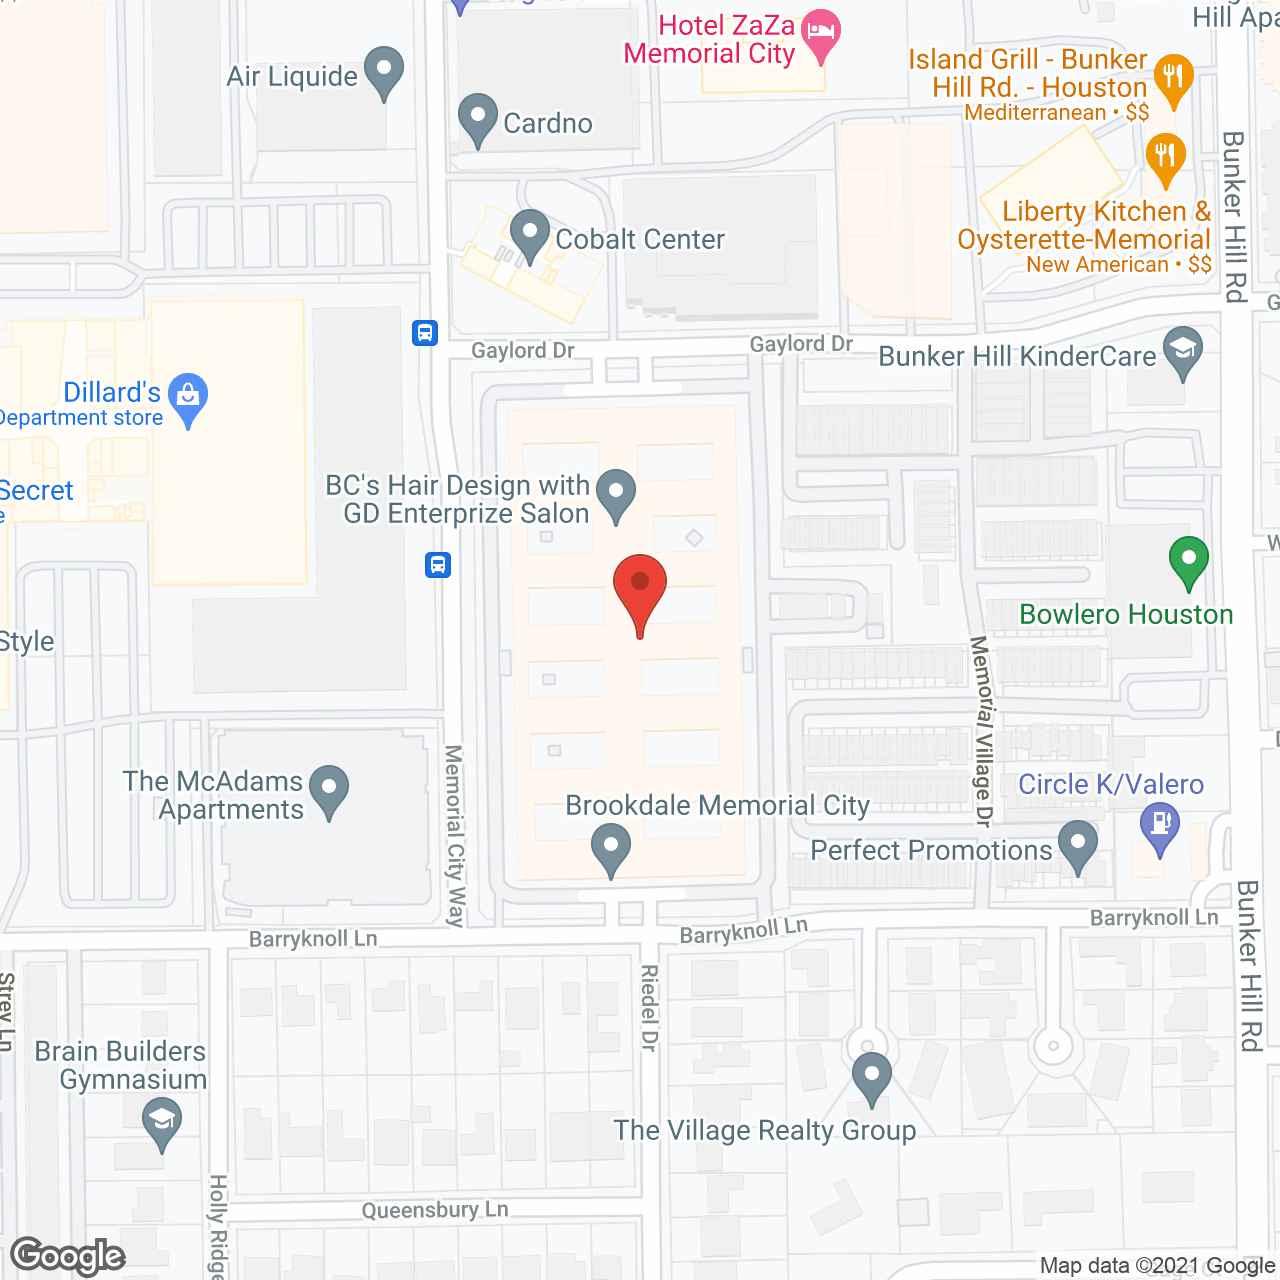 Brookdale Memorial City in google map